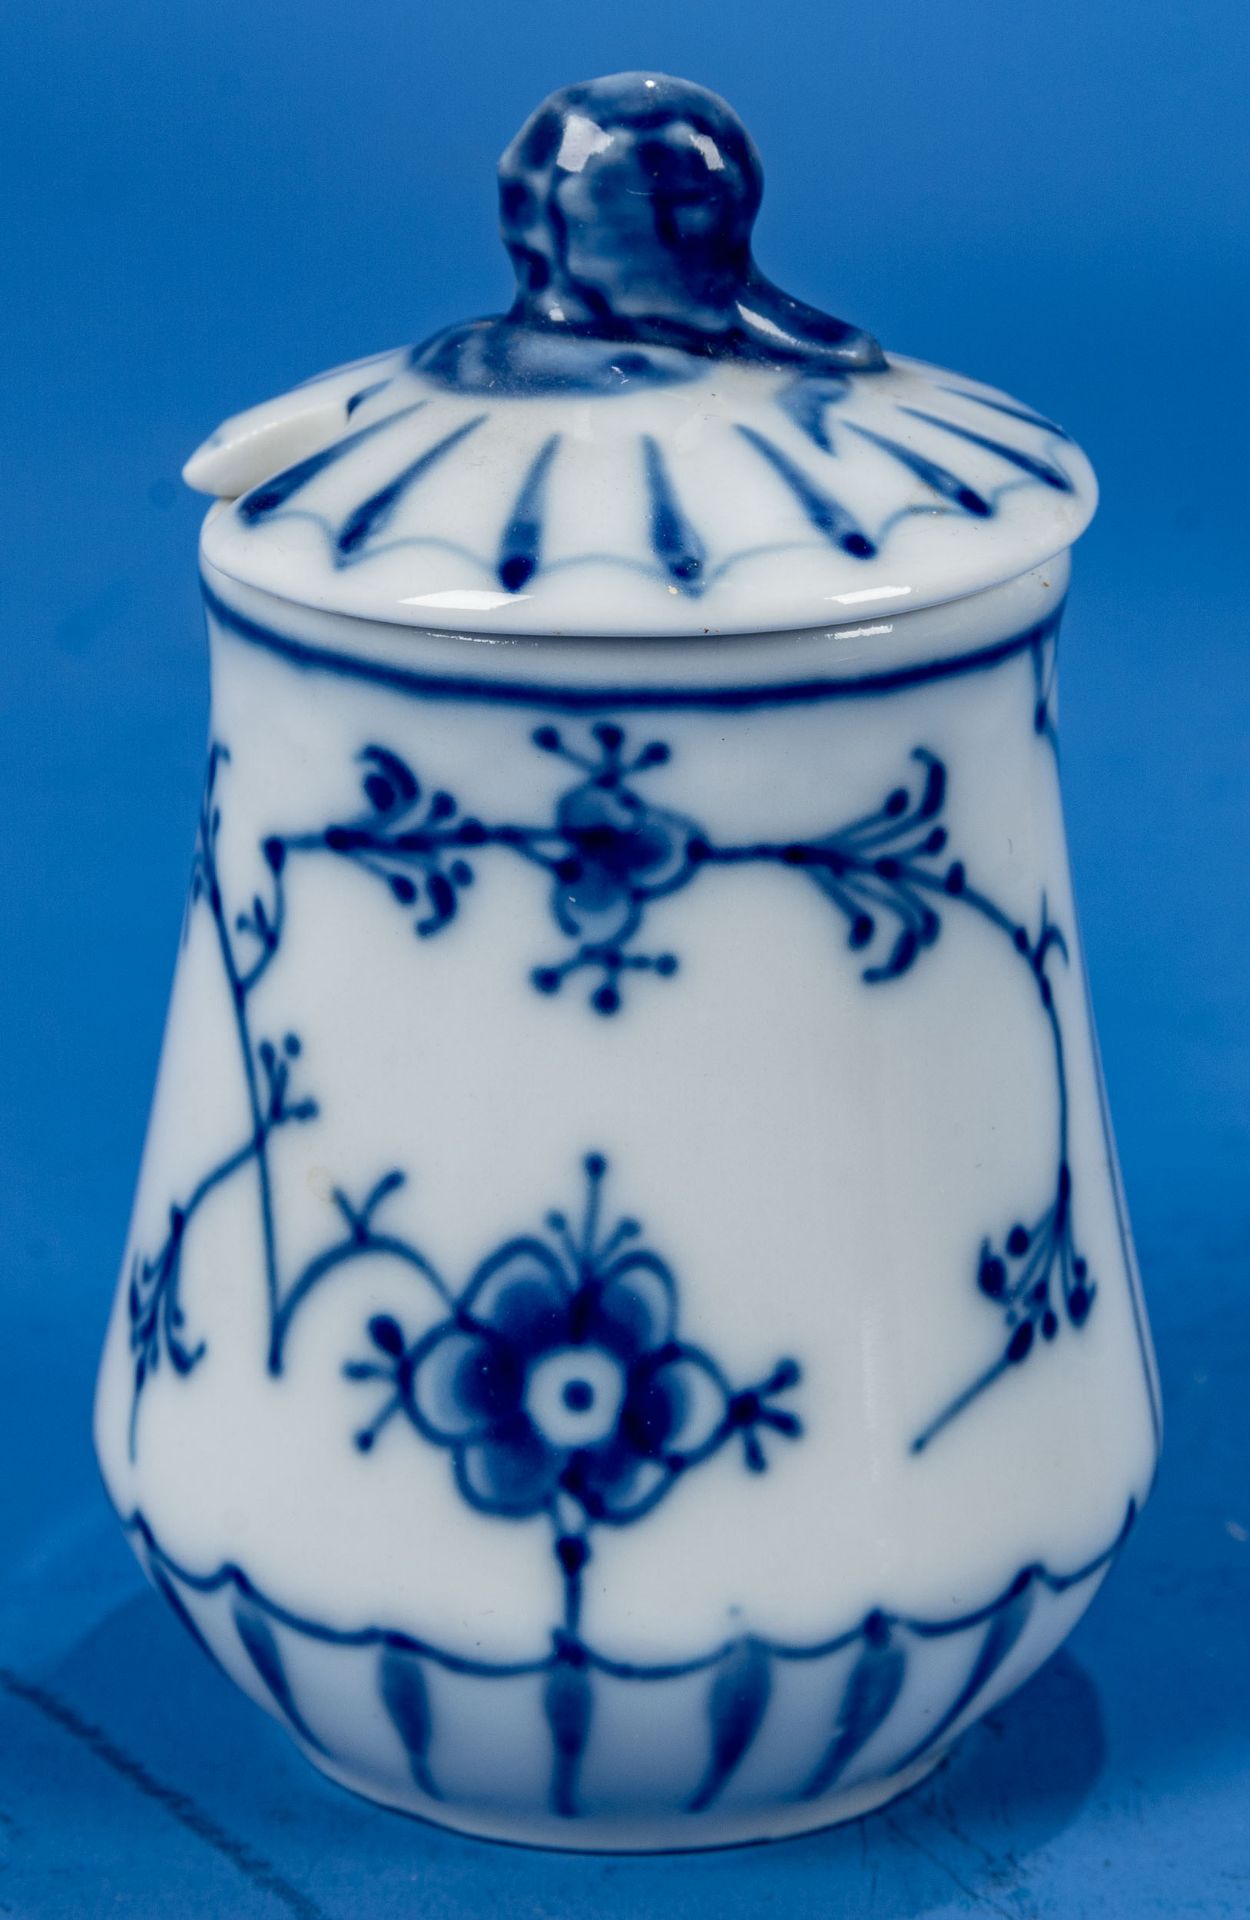 4teiliges Set kleinerer Porzellan-Objekte, bestehend aus 1 Streuer (Höhe ca. 7 cm), kleiner Blattsc - Image 5 of 8